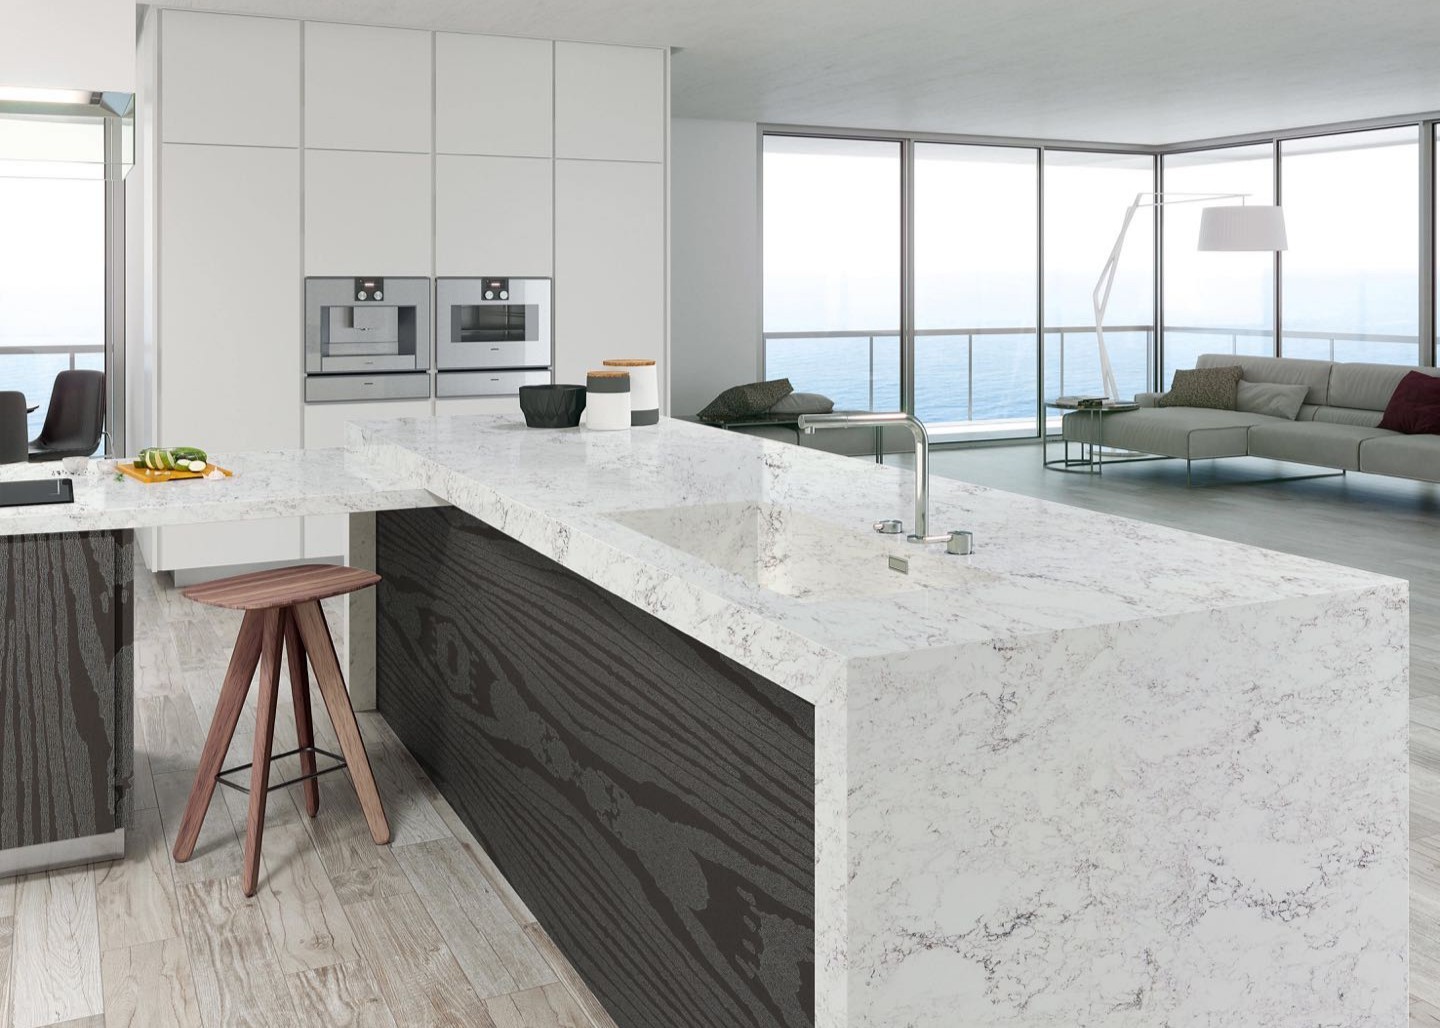 High Hardness Quartz Stone Kitchen Top White Quartz Countertops With